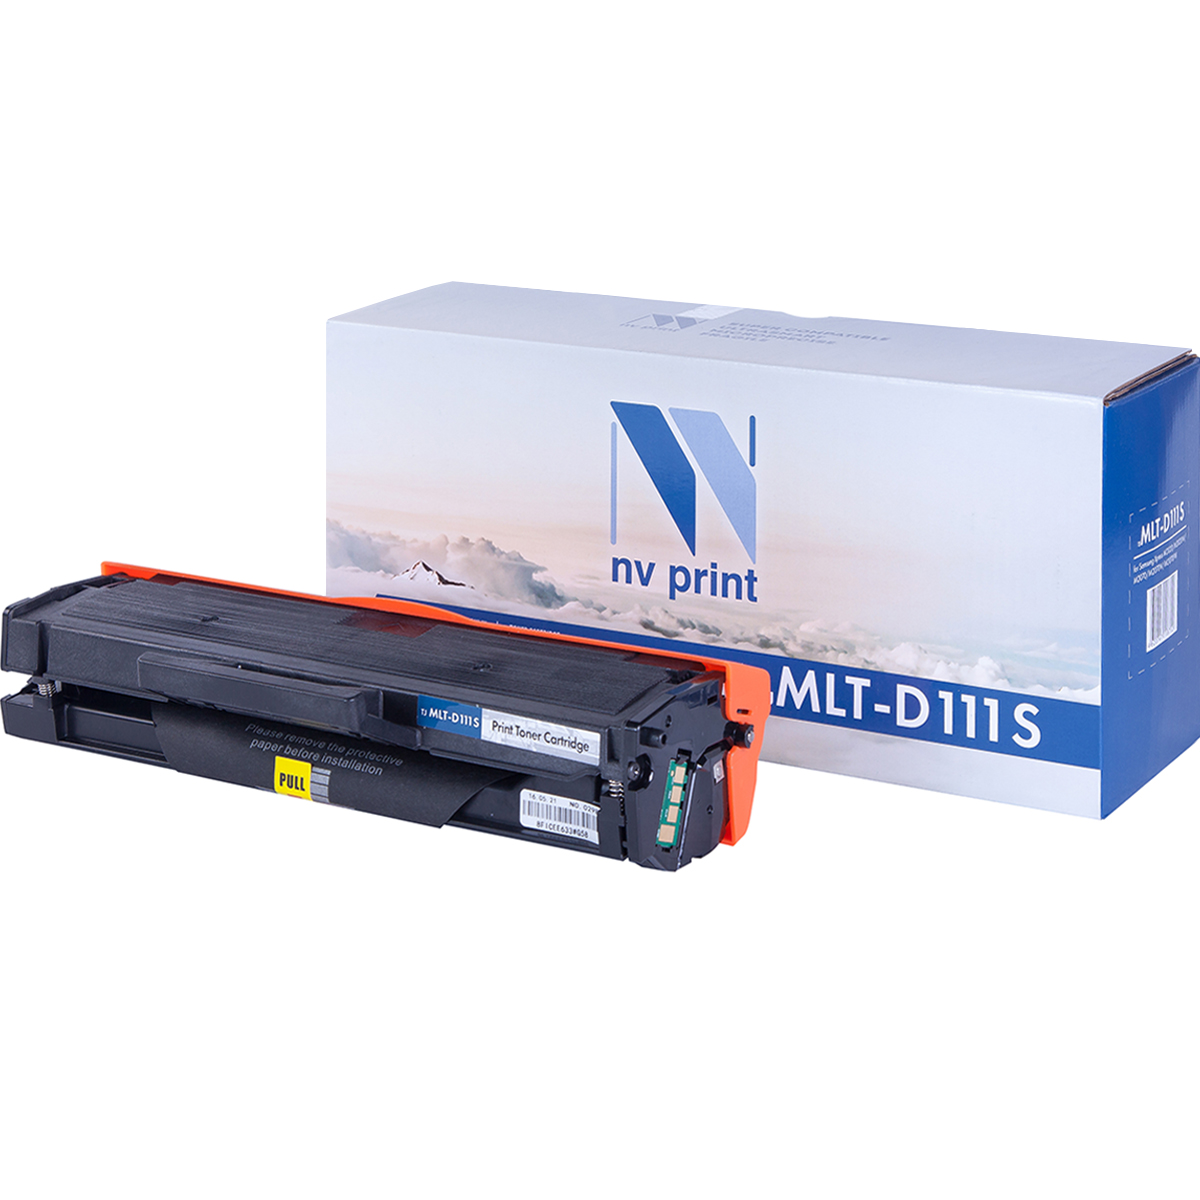 Картридж NV Print MLT-D111S для Samsung Xpress M2020/M2020W/M2070/M2070W/M2070FW (1500k) картридж easyprint mlt d111s для для samsung sl m2020 2020w 2070 2070w 1000стр черный